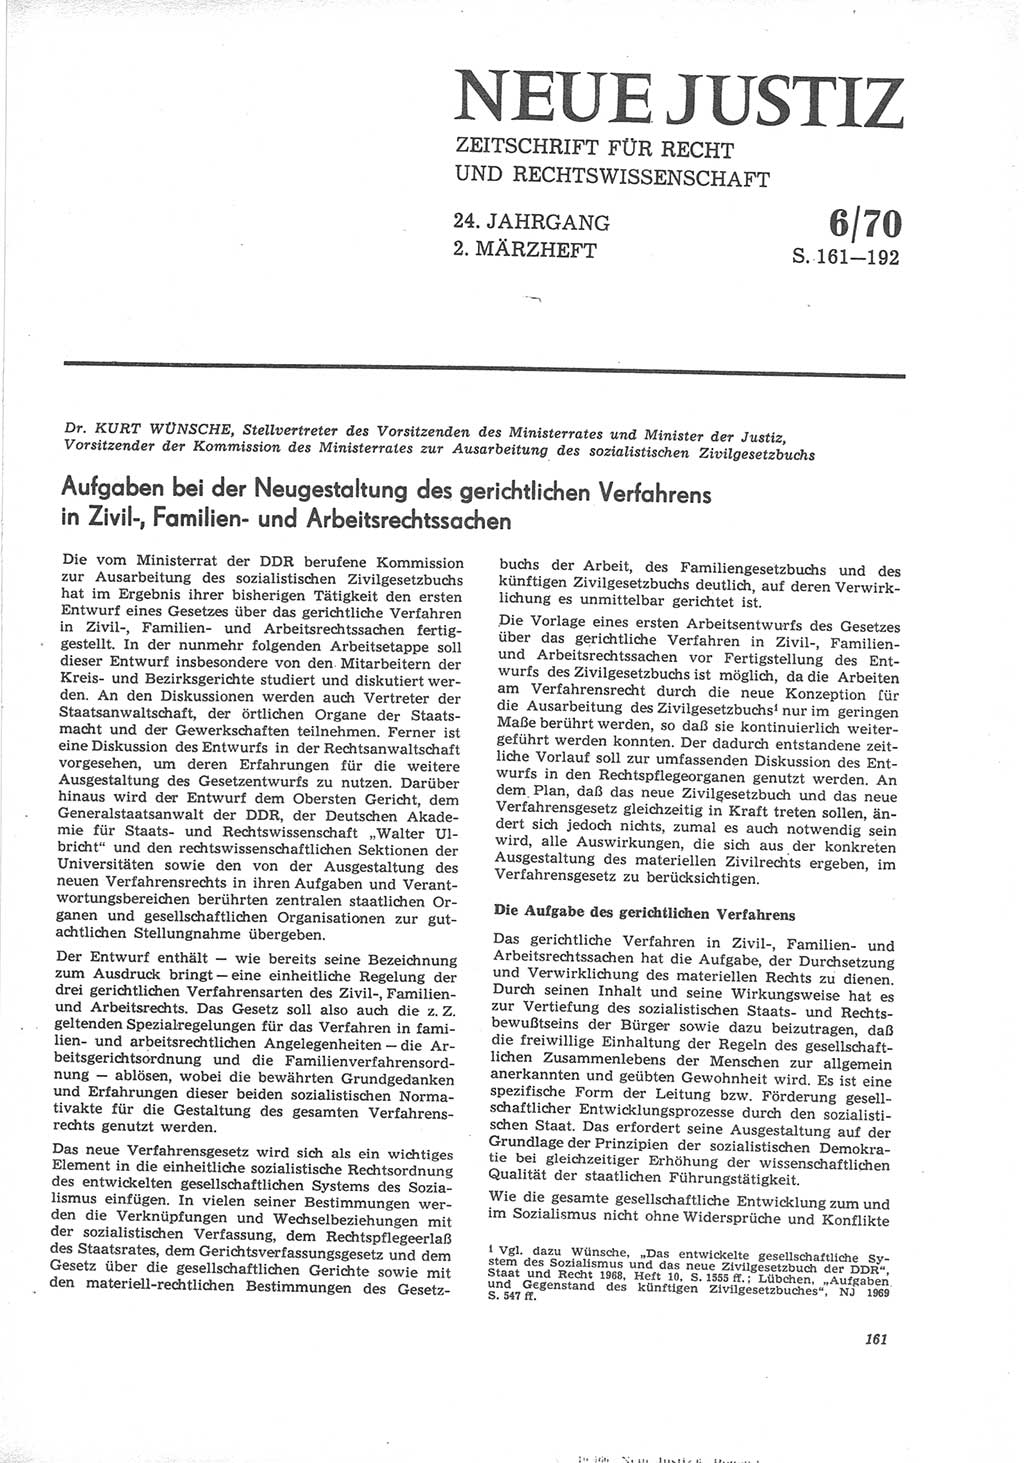 Neue Justiz (NJ), Zeitschrift für Recht und Rechtswissenschaft [Deutsche Demokratische Republik (DDR)], 24. Jahrgang 1970, Seite 161 (NJ DDR 1970, S. 161)